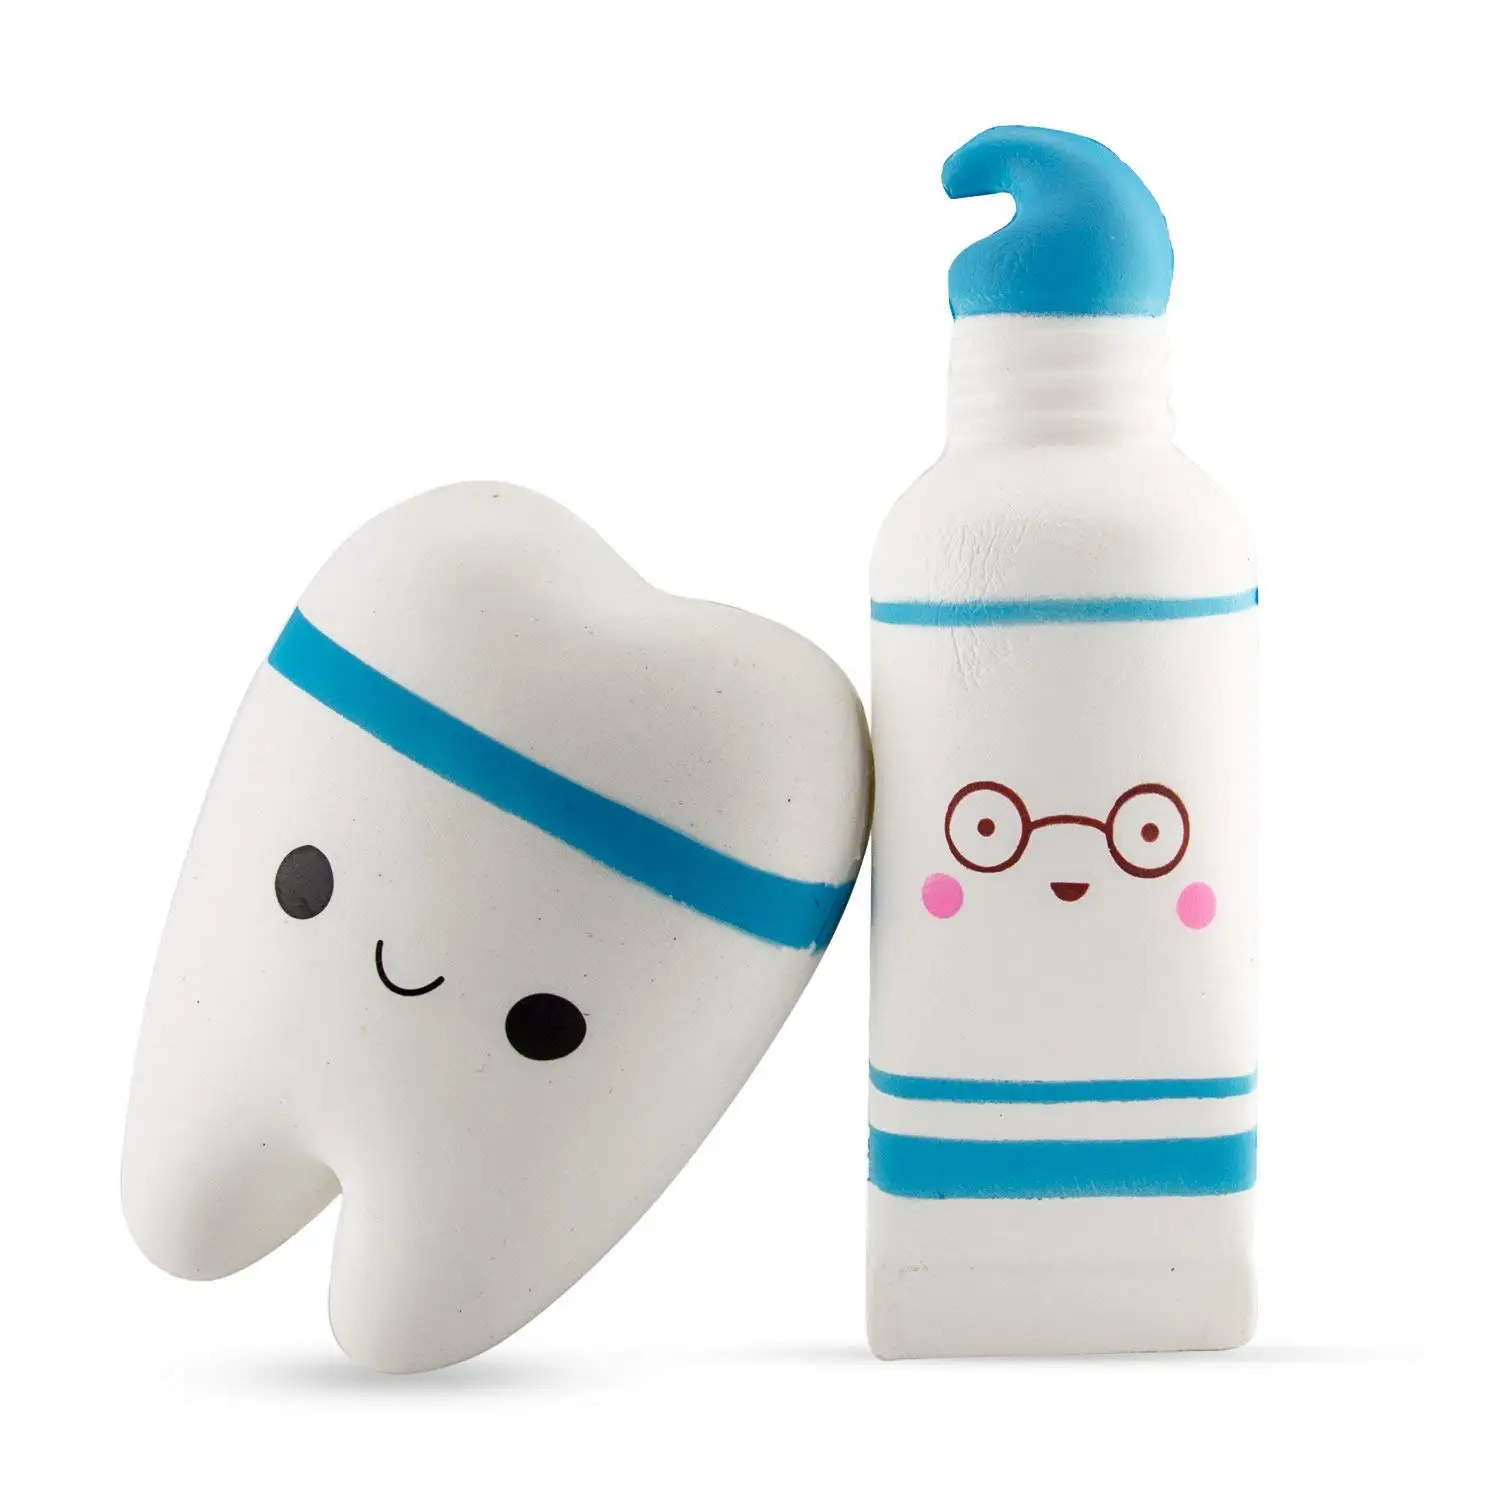 Медленно распрямляющийся мягкий, 1 шт. улыбка зуб и 1 шт. мультяшная зубная паста (крем) ароматизированный отскок снятие стресса игрушки